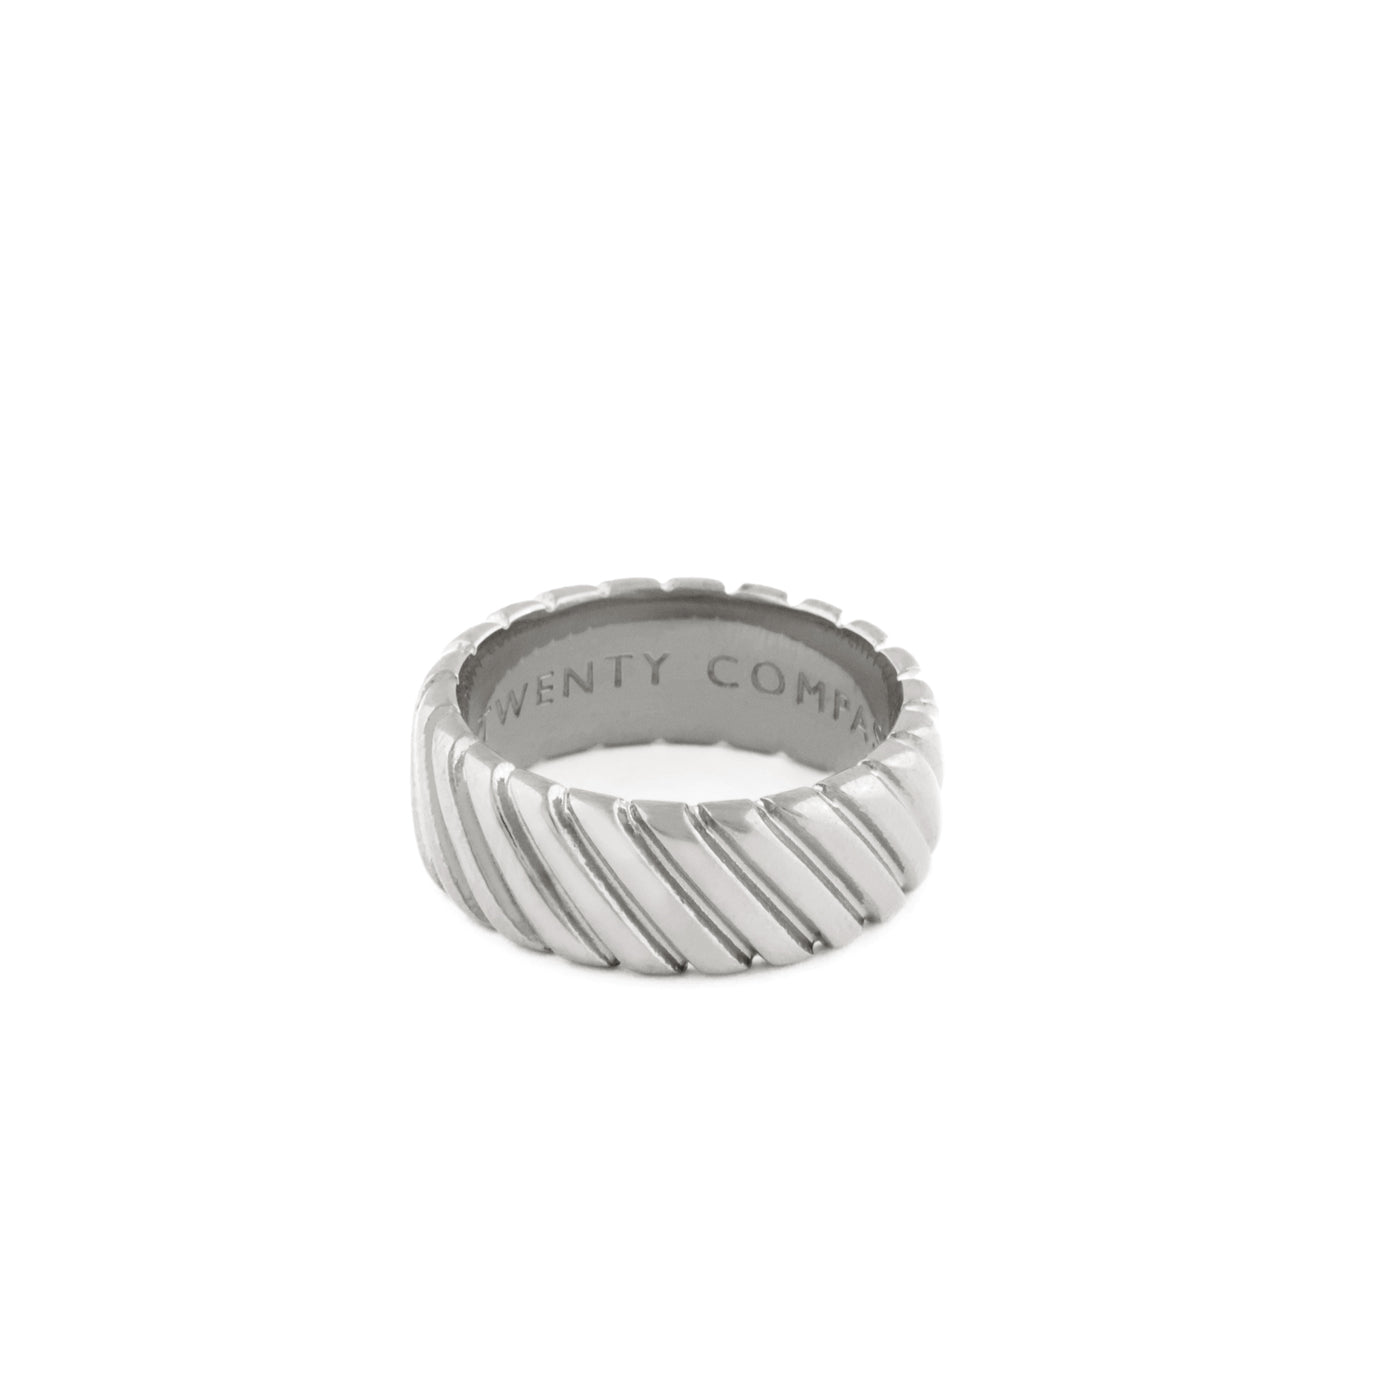 Coquette Ring - Silver